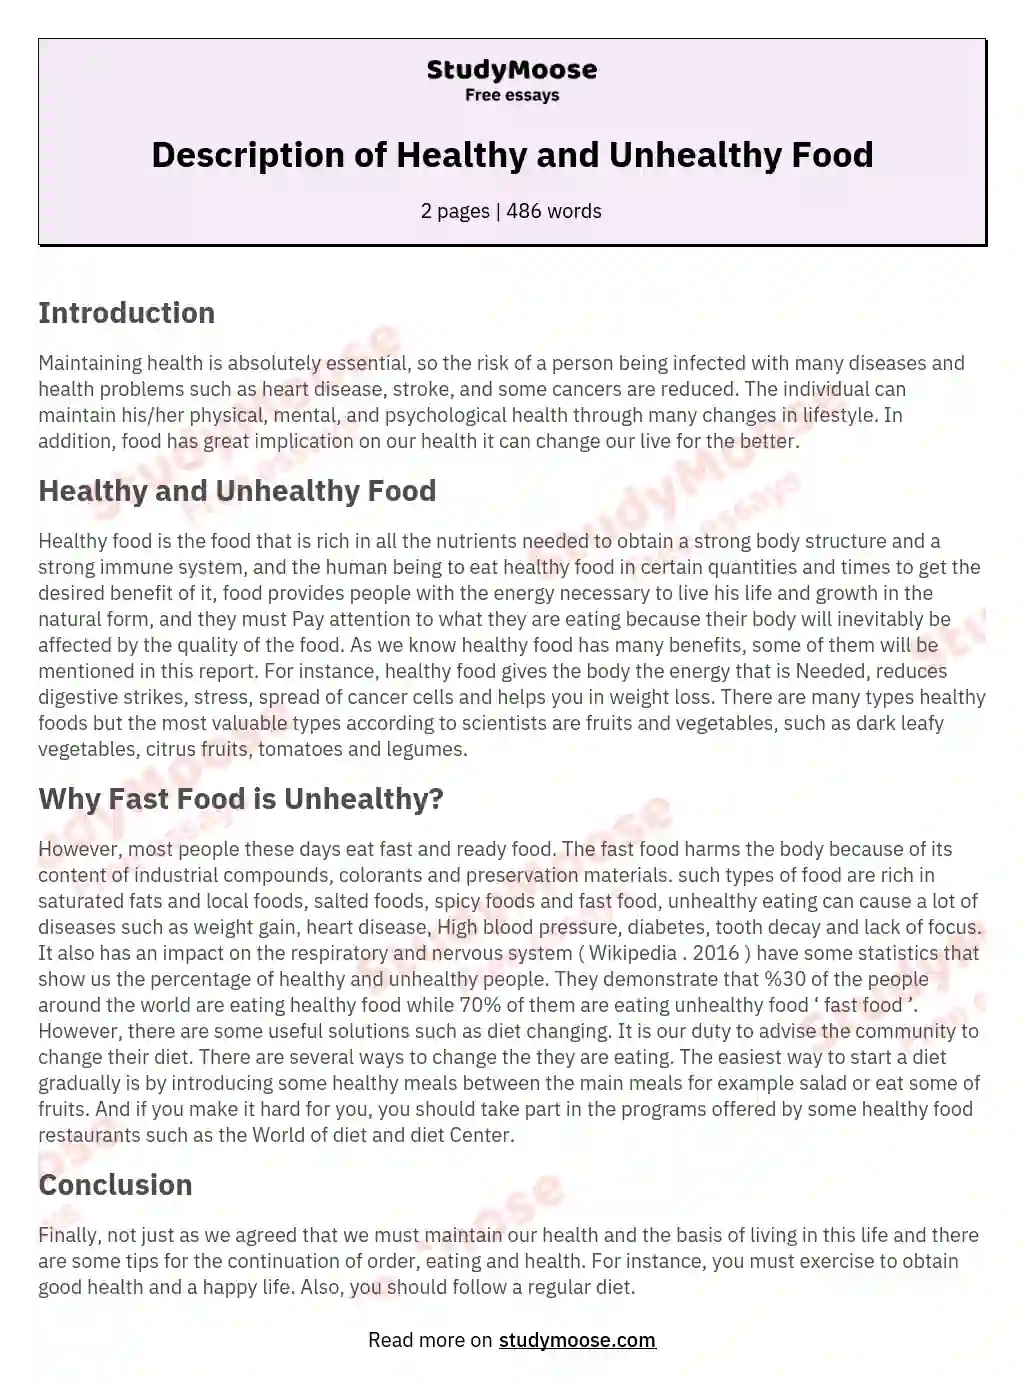 healthy vs unhealthy food essay